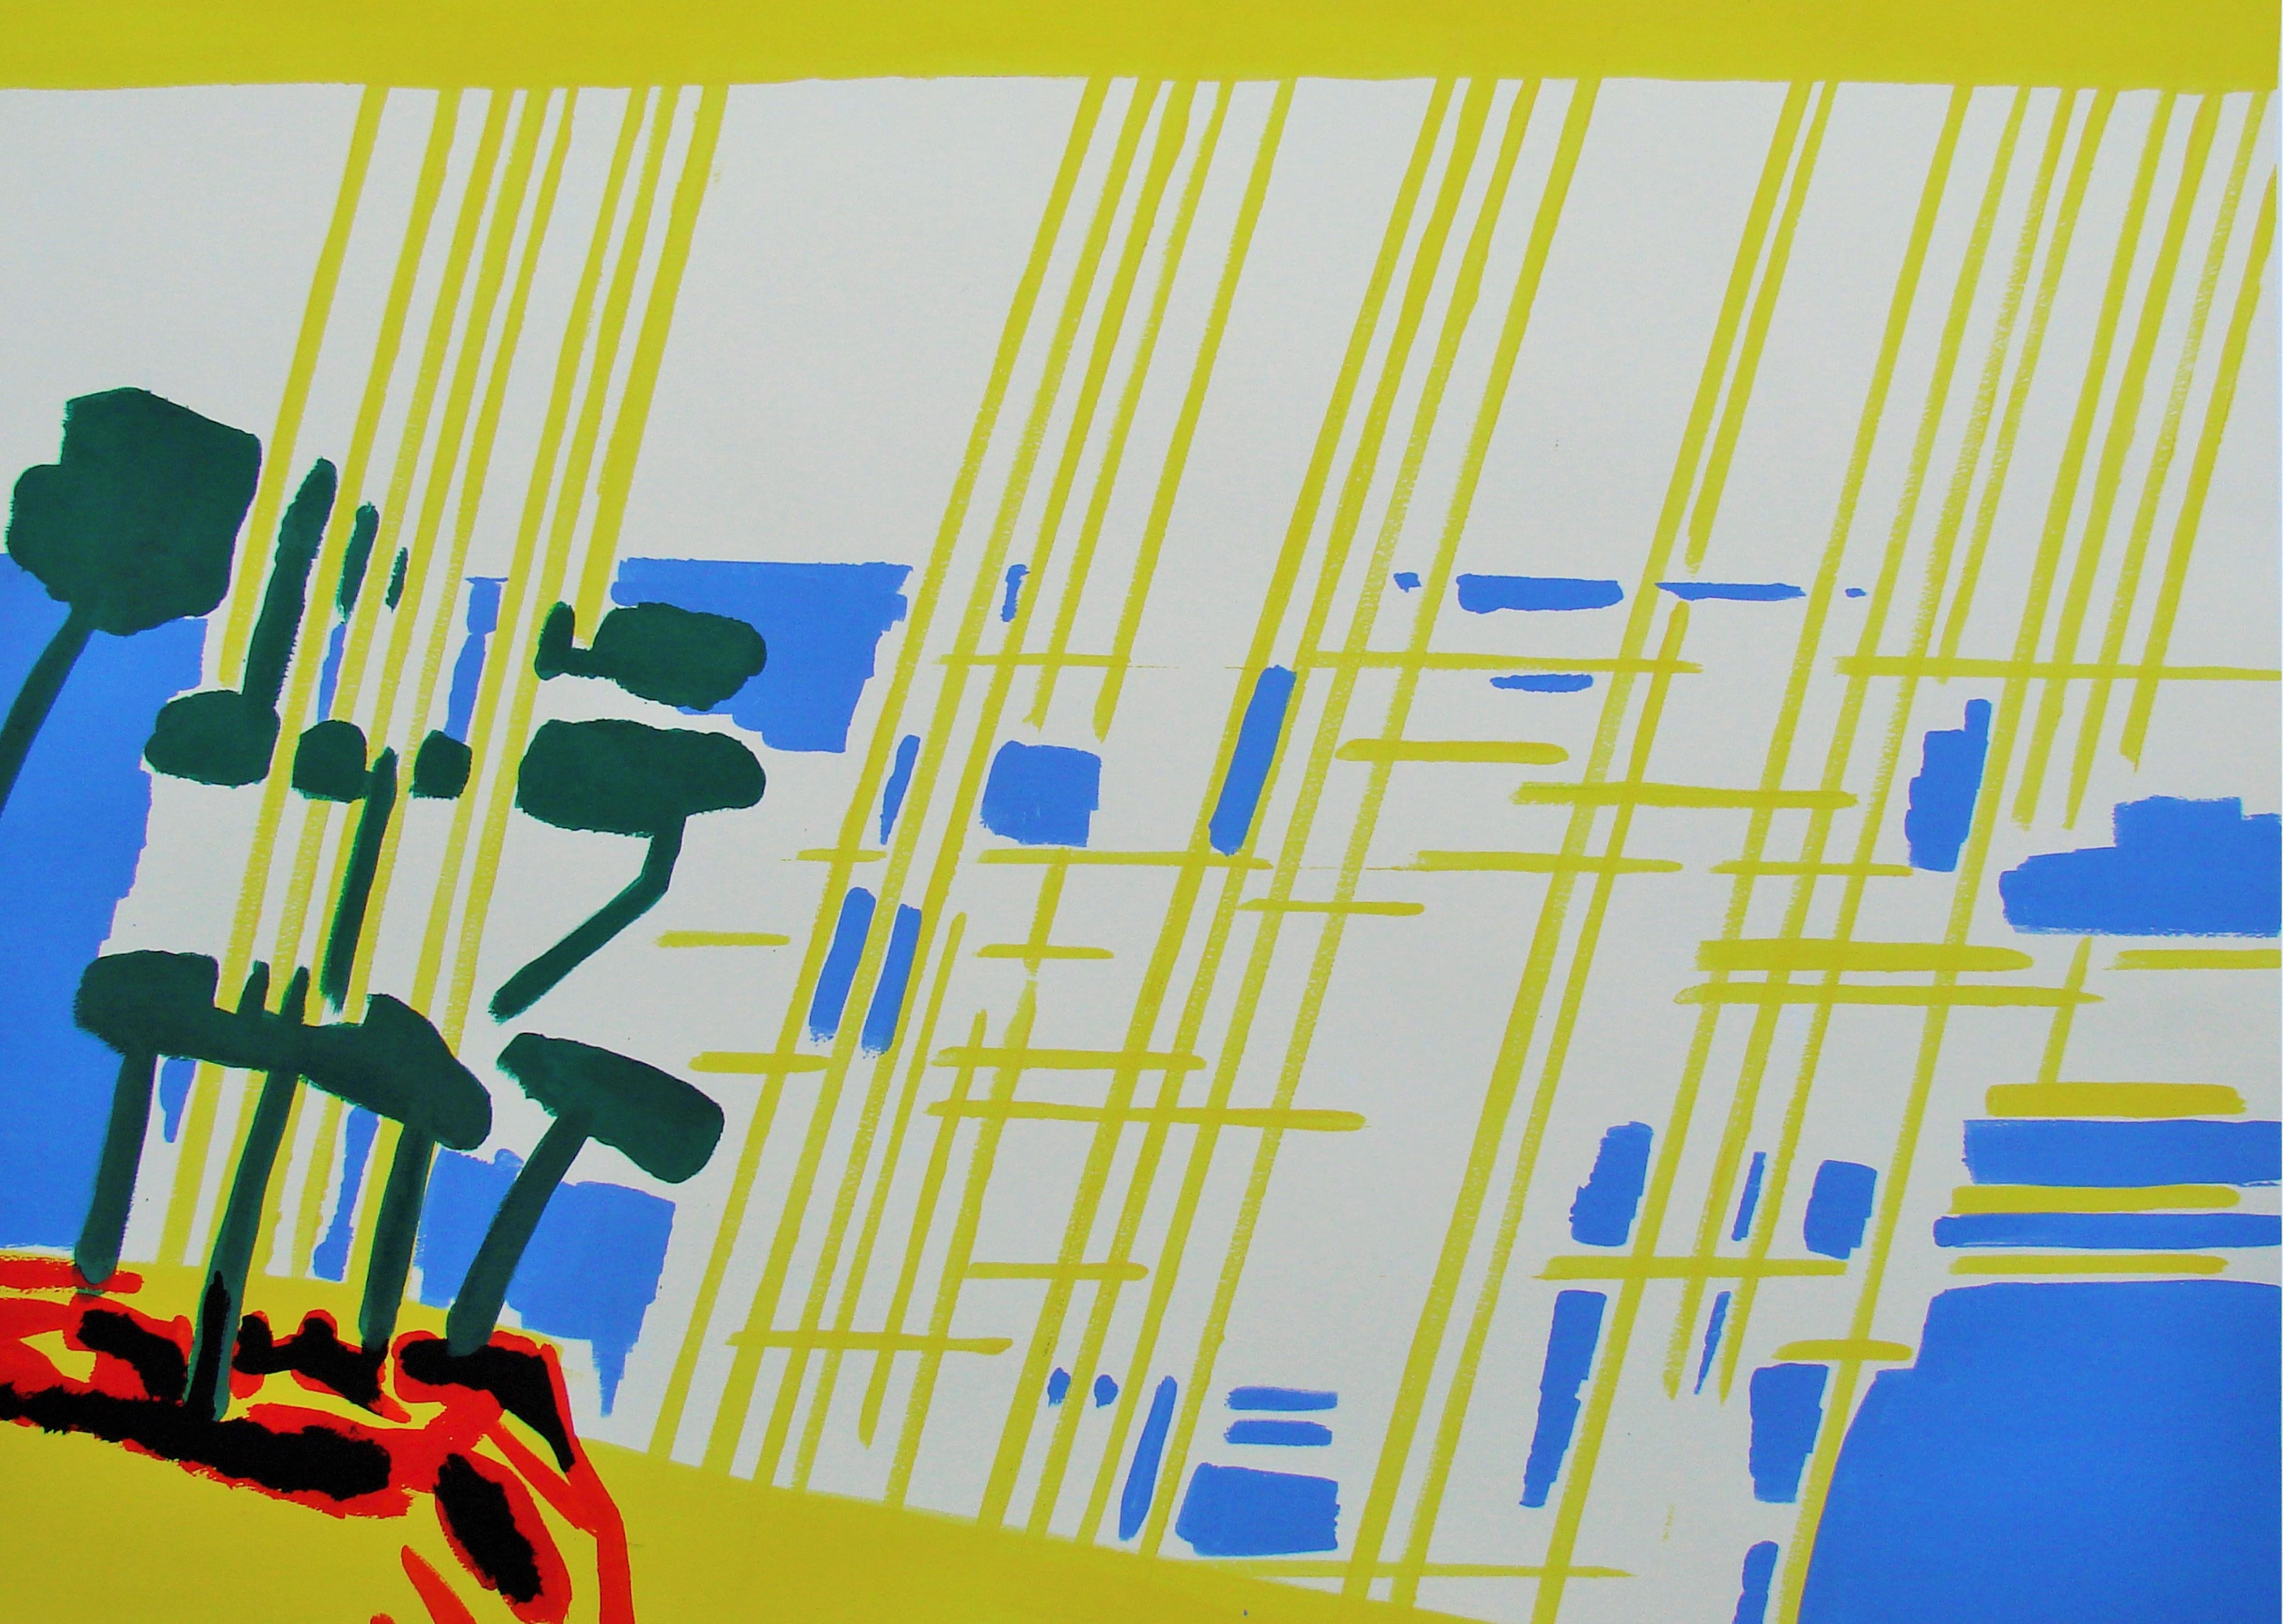 Meridional VIII - Zeitgenössisch, Zeichnung, Gelb, Blau, Rot, Landschaft, Sonne (Grau), Landscape Art, von Alexandru Rădvan